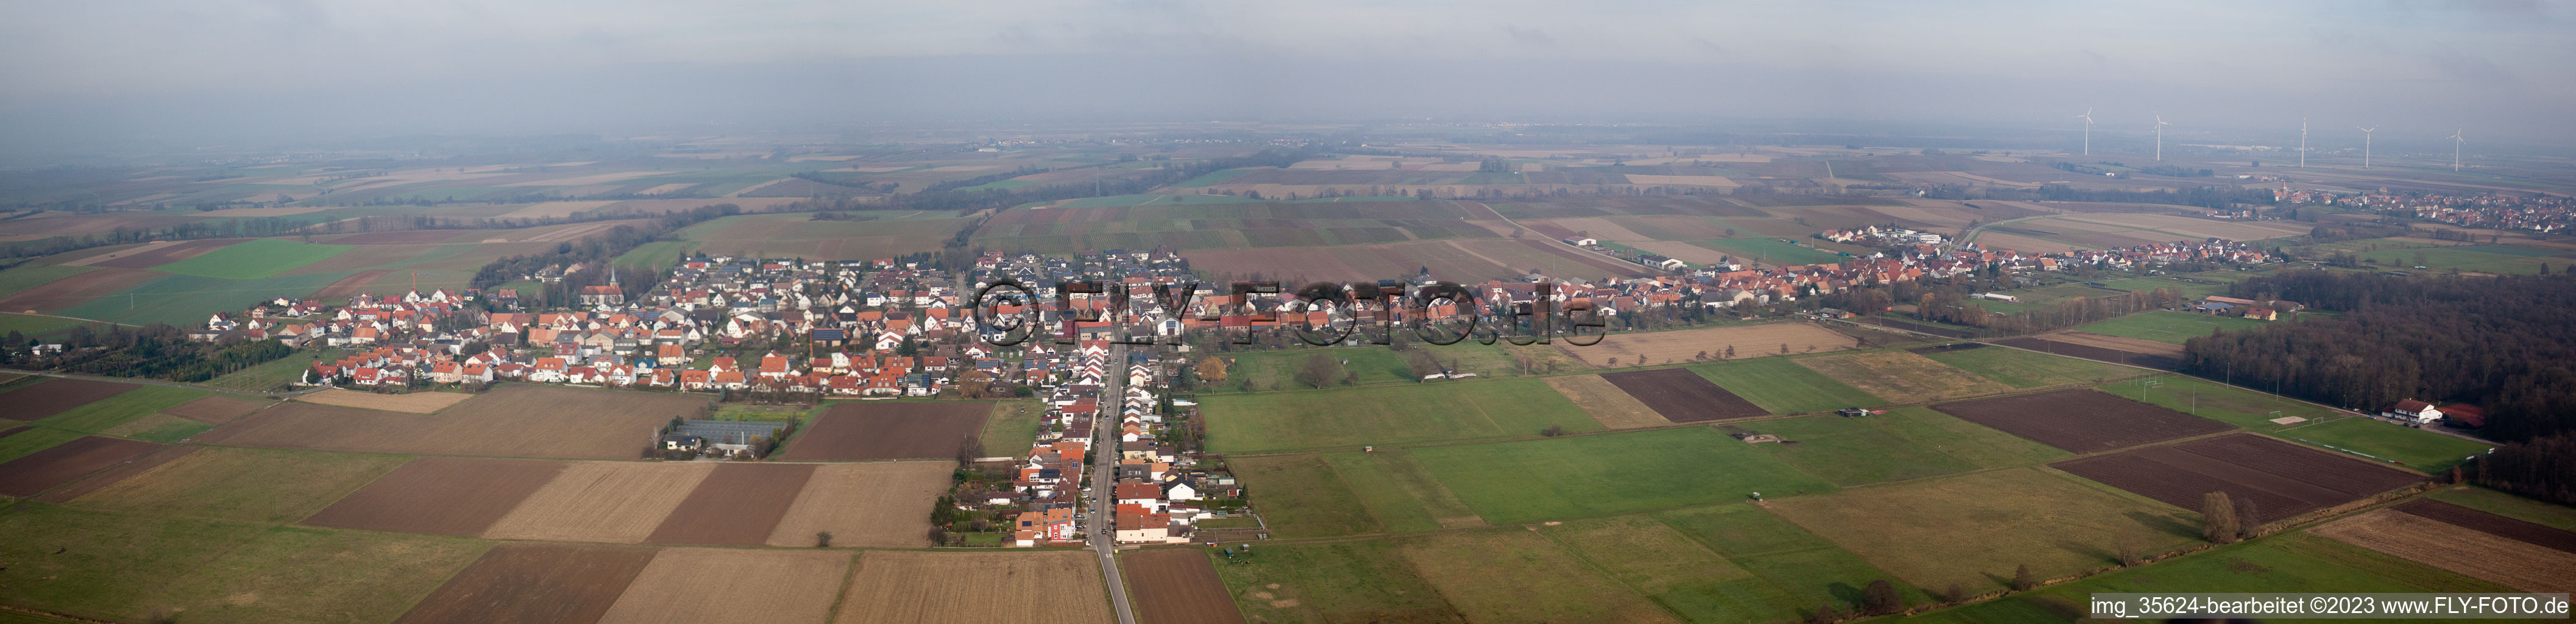 Vue aérienne de Panorama à Freckenfeld dans le département Rhénanie-Palatinat, Allemagne